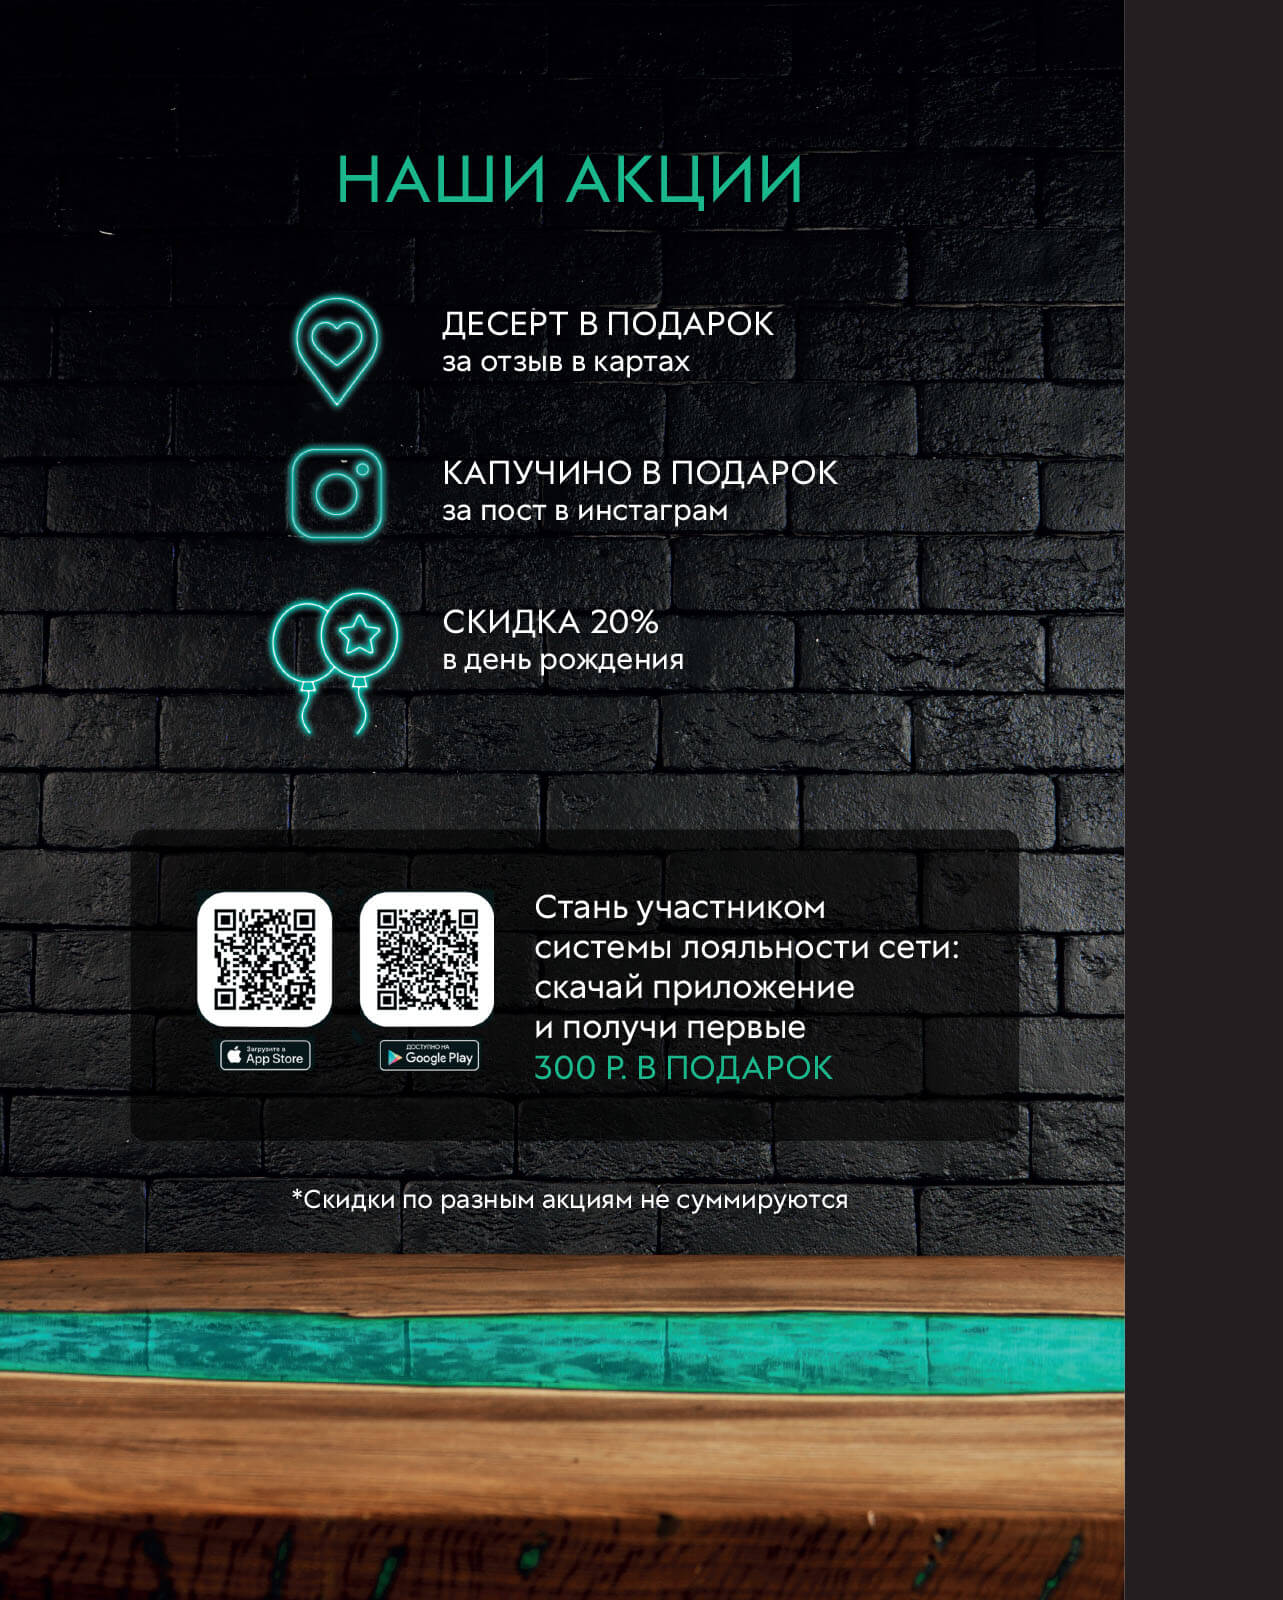 ресторан мята москва официальный сайт меню